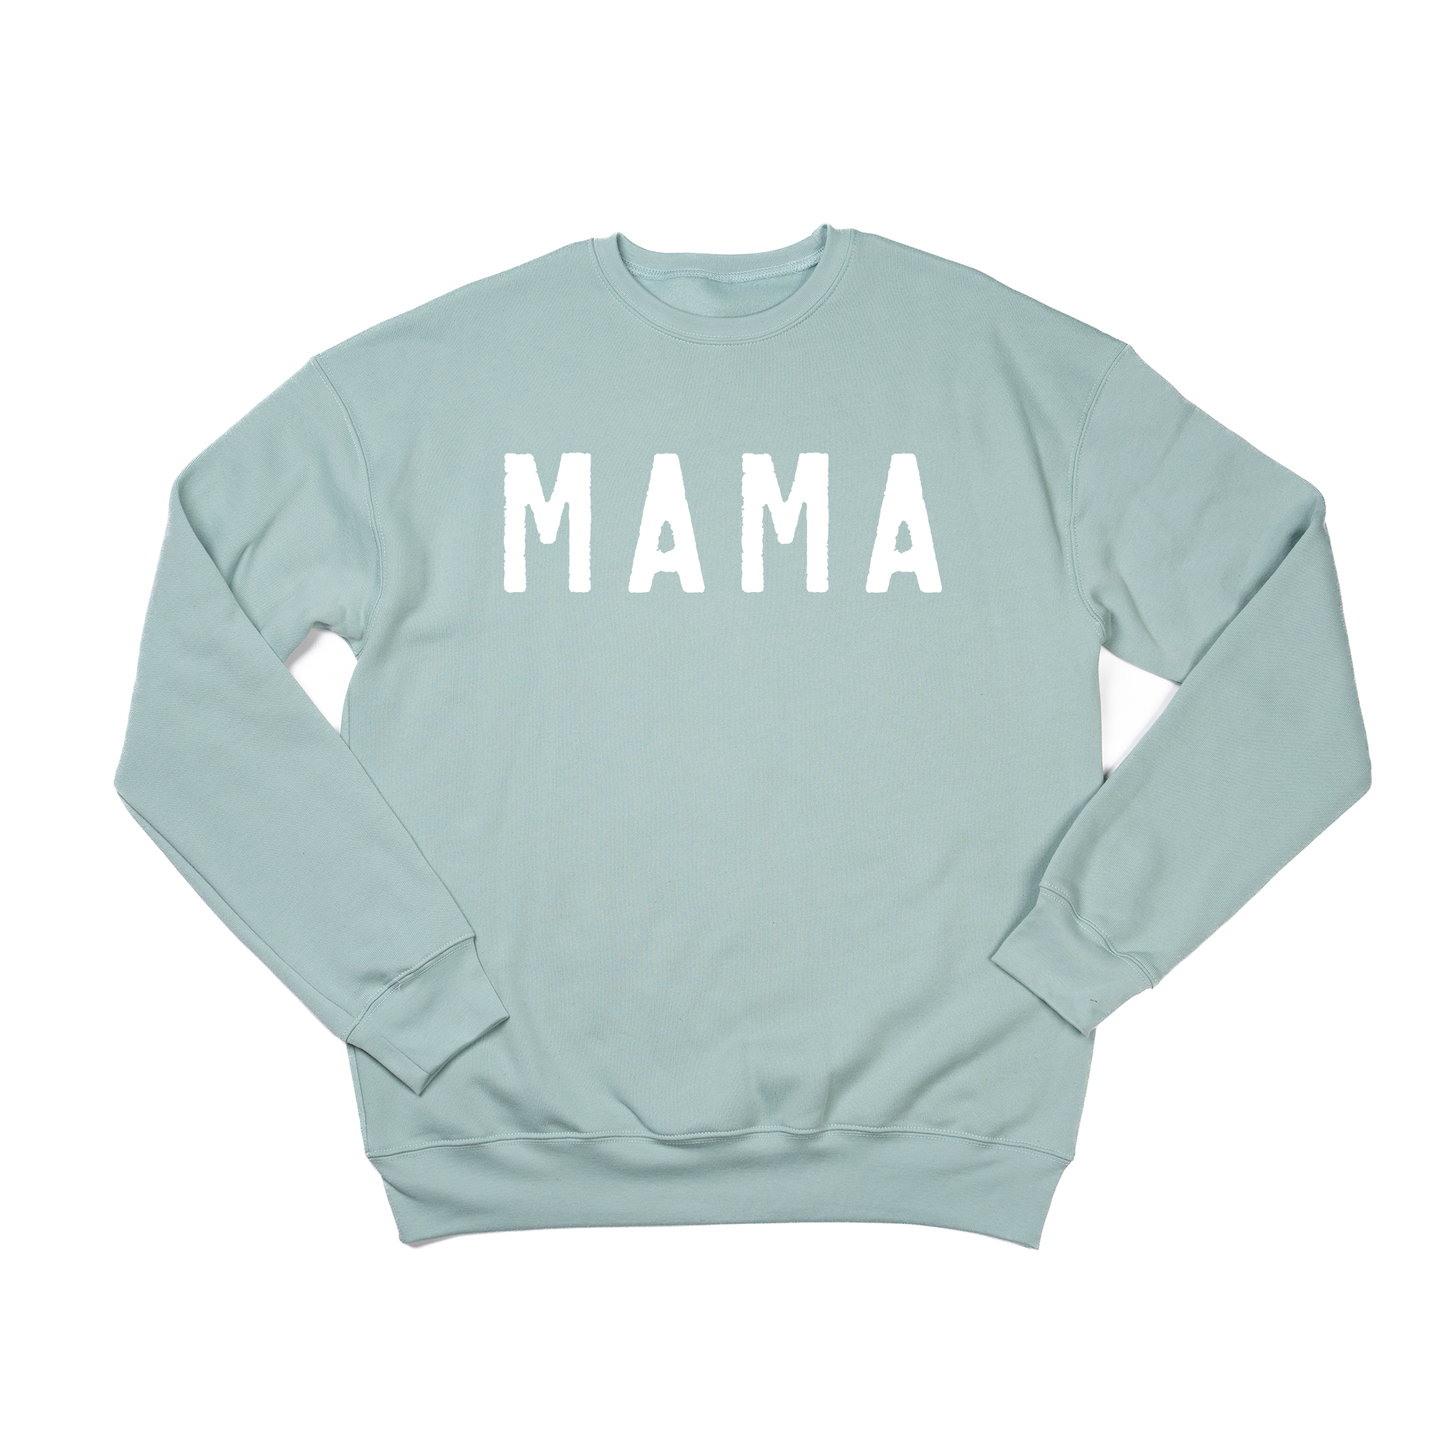 Mama (Rough, White) - Sweatshirt (Sky)